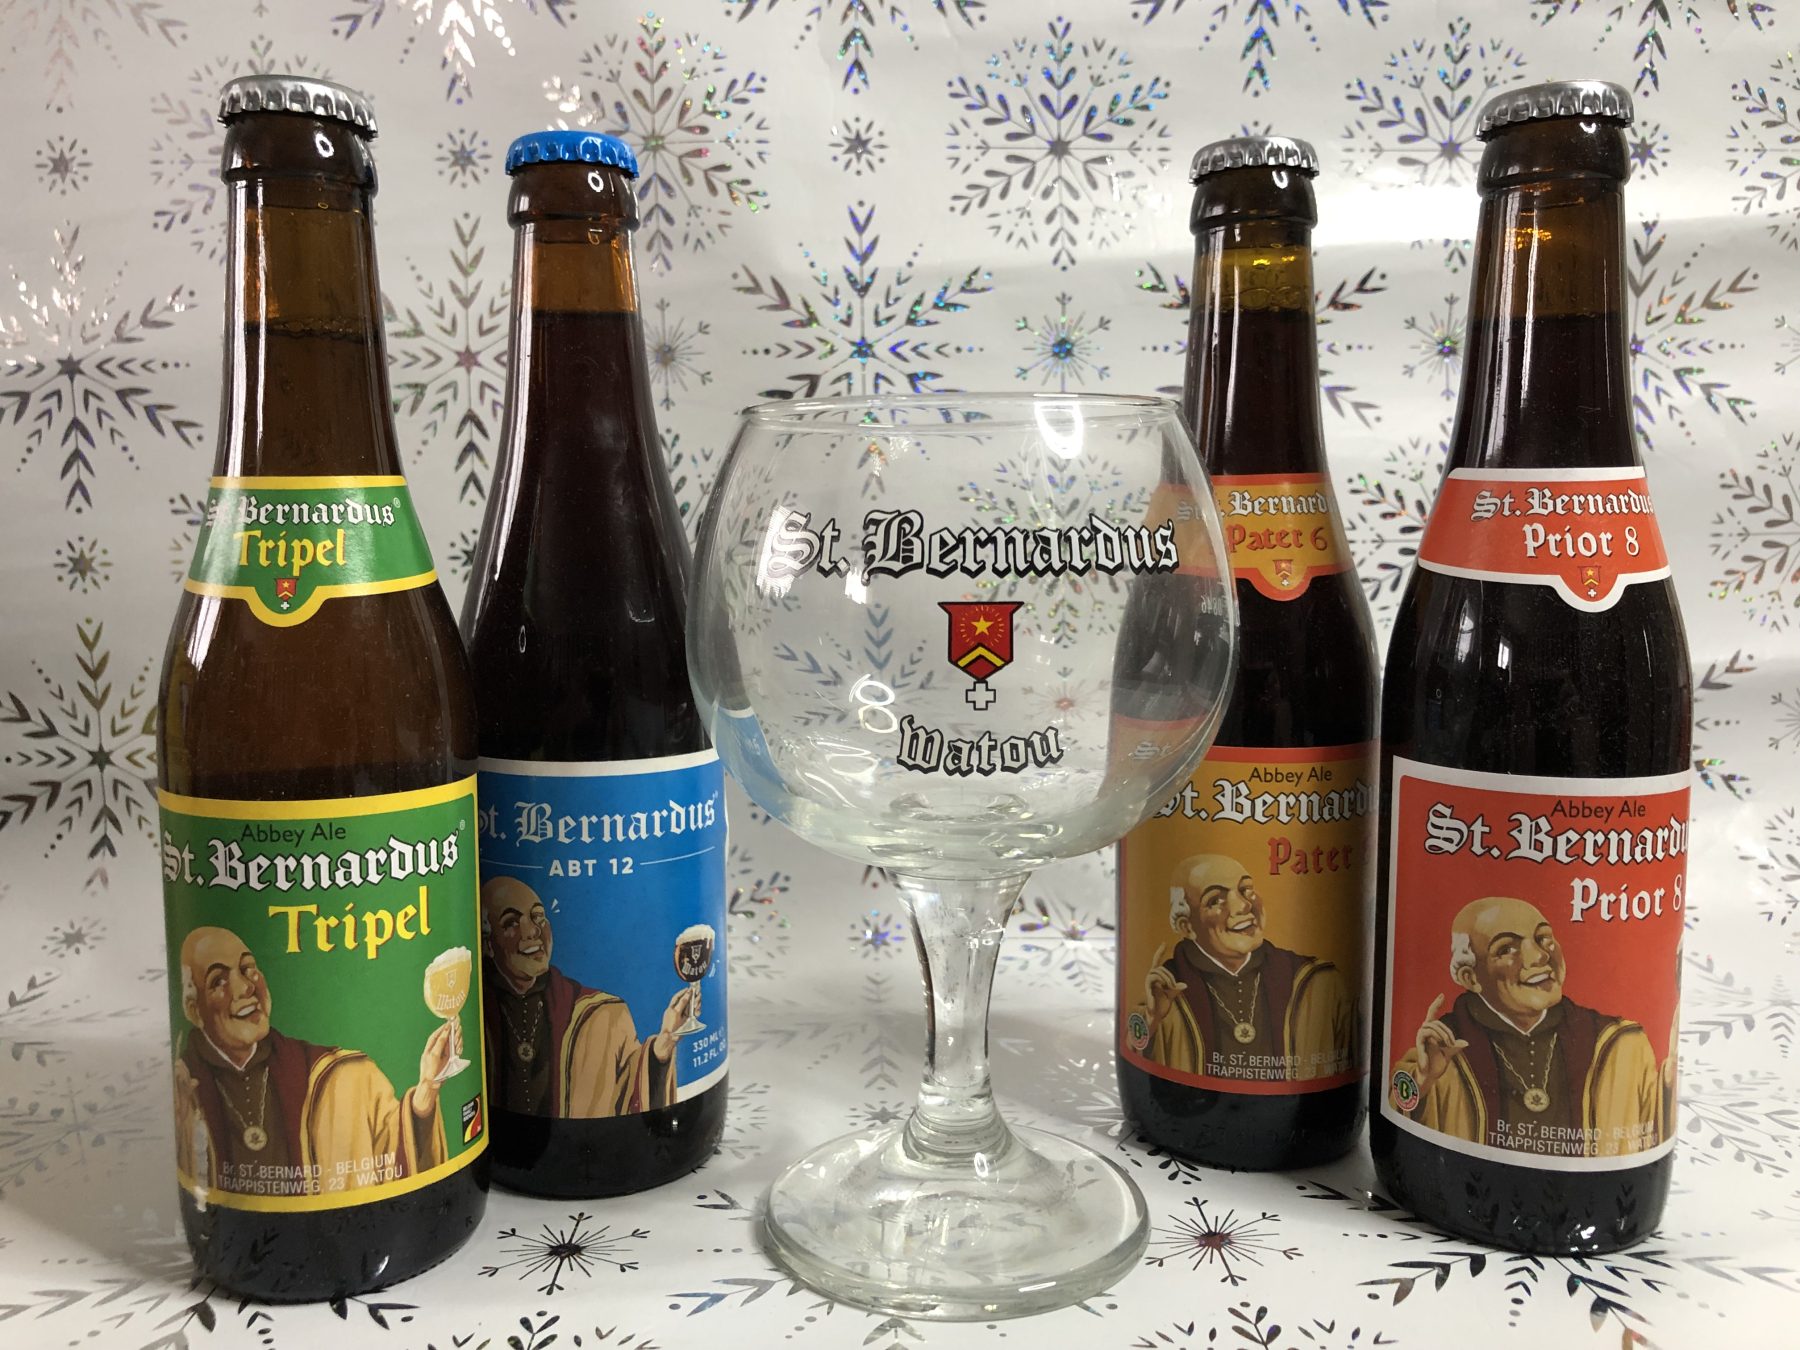 St Bernardus Watou gift hamper (4 beers + beer glass)